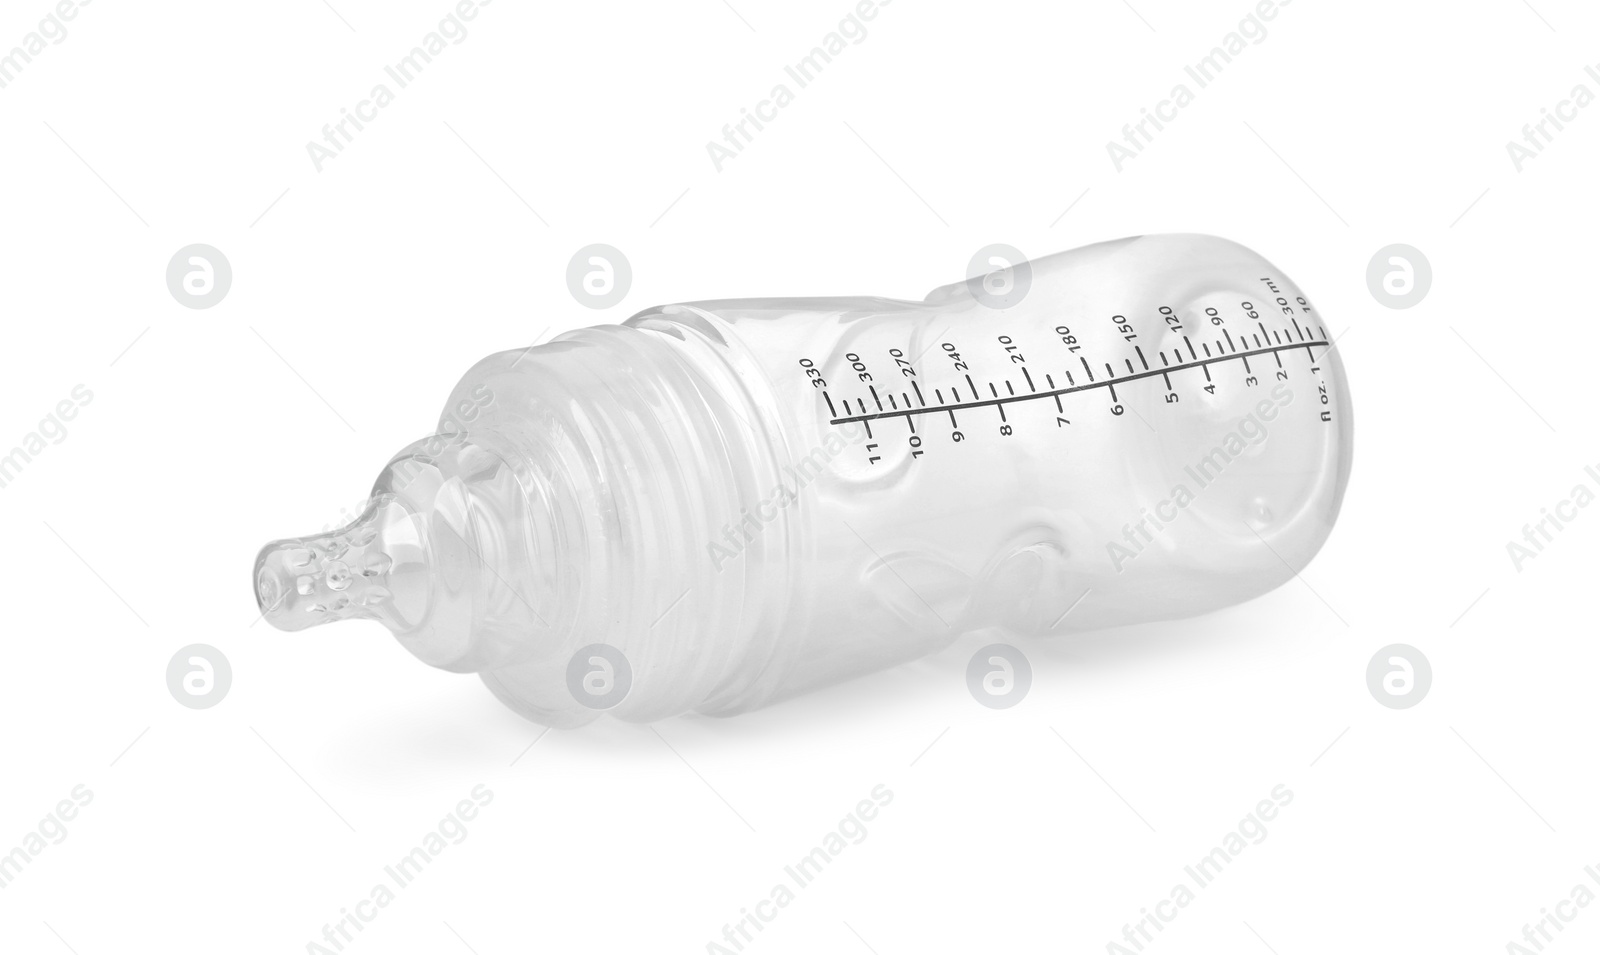 Photo of Empty feeding bottle for infant formula isolated on white